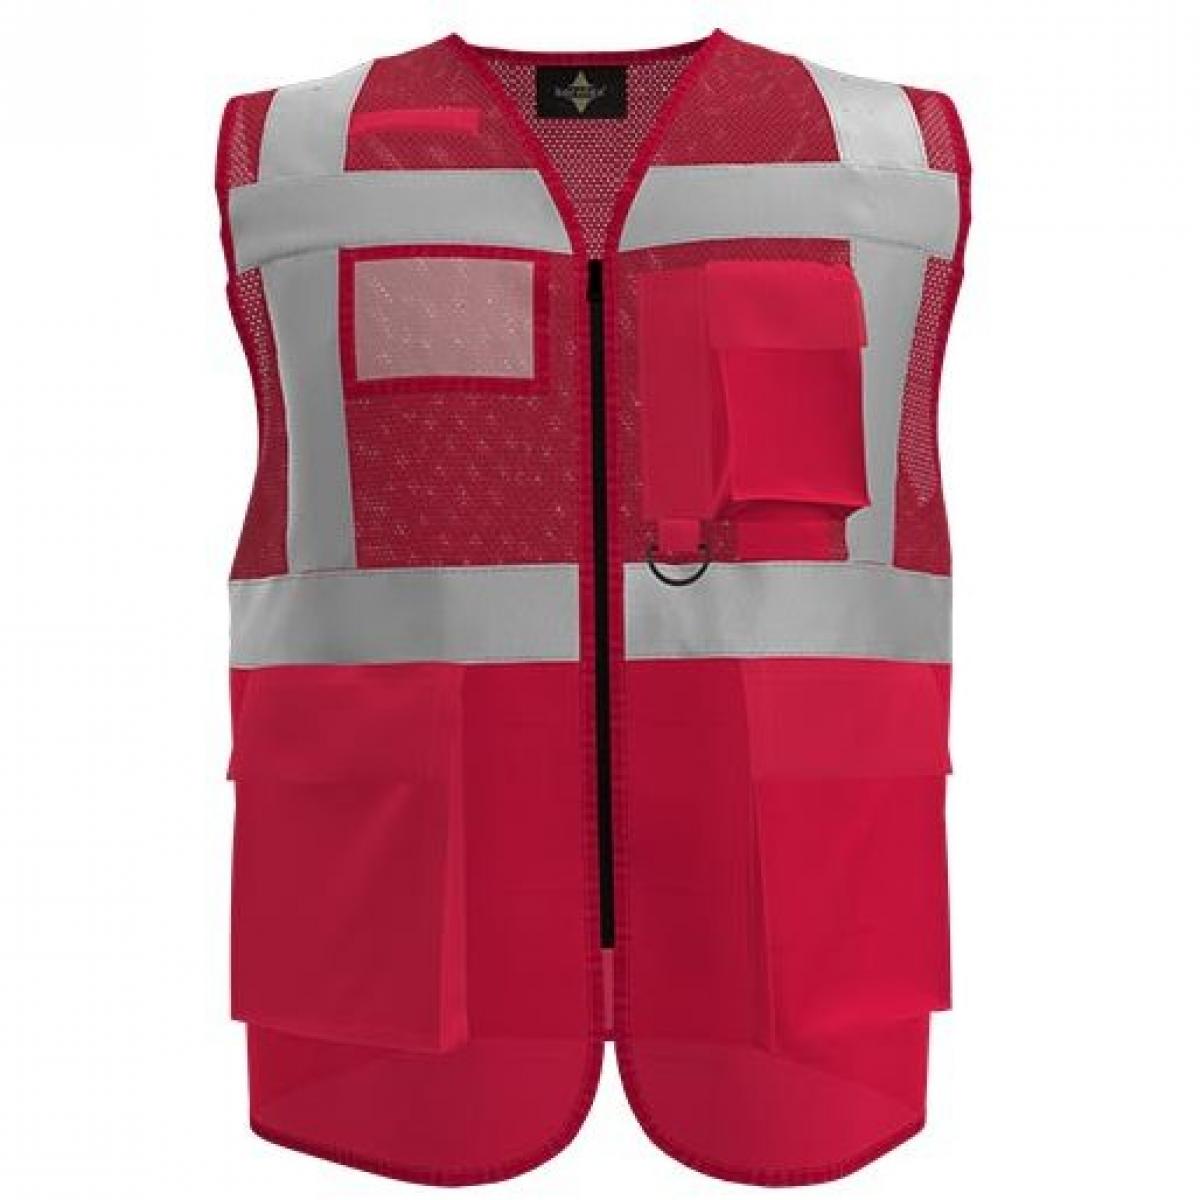 Hersteller: Korntex Herstellernummer: KXEXQ Artikelbezeichnung: Multifunkitons-Warnweste Mesh Multifunction Vest Farbe: Red